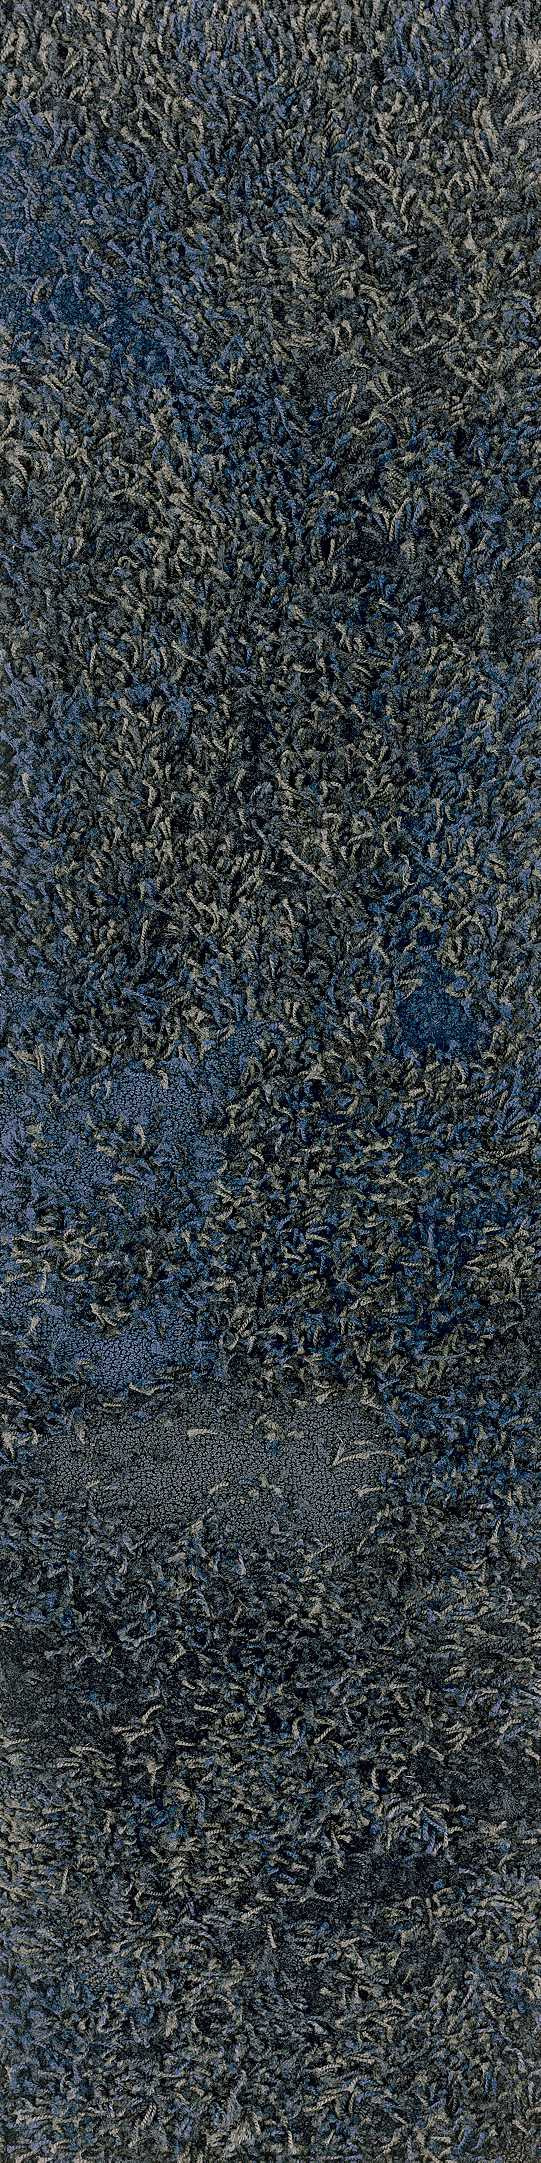 Shaw Primitive Carpet Tile Tactile